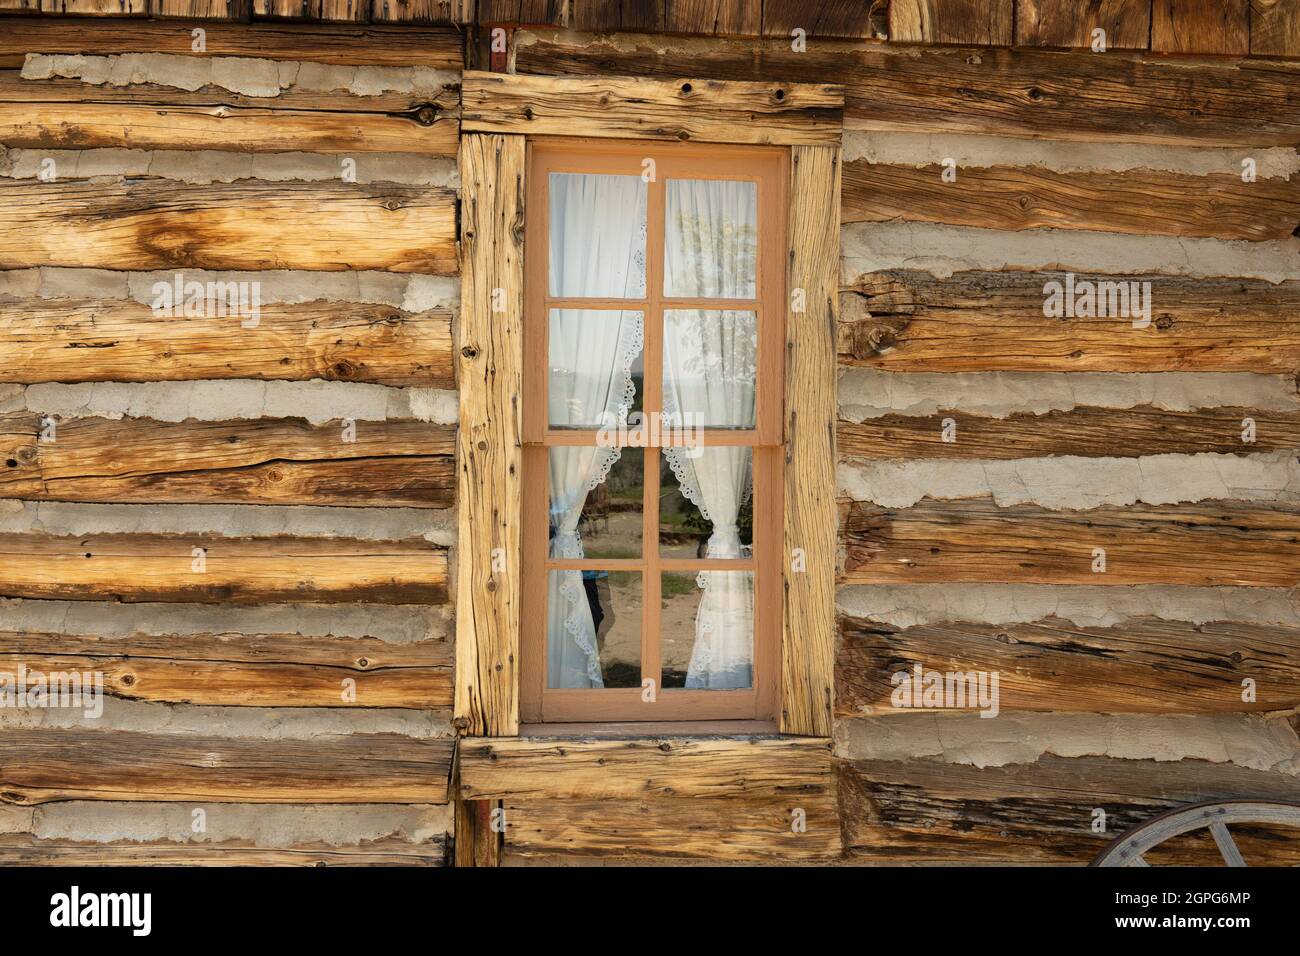 Vieille fenêtre en bois avec un rideau dans une cabane rustique en bois Banque D'Images